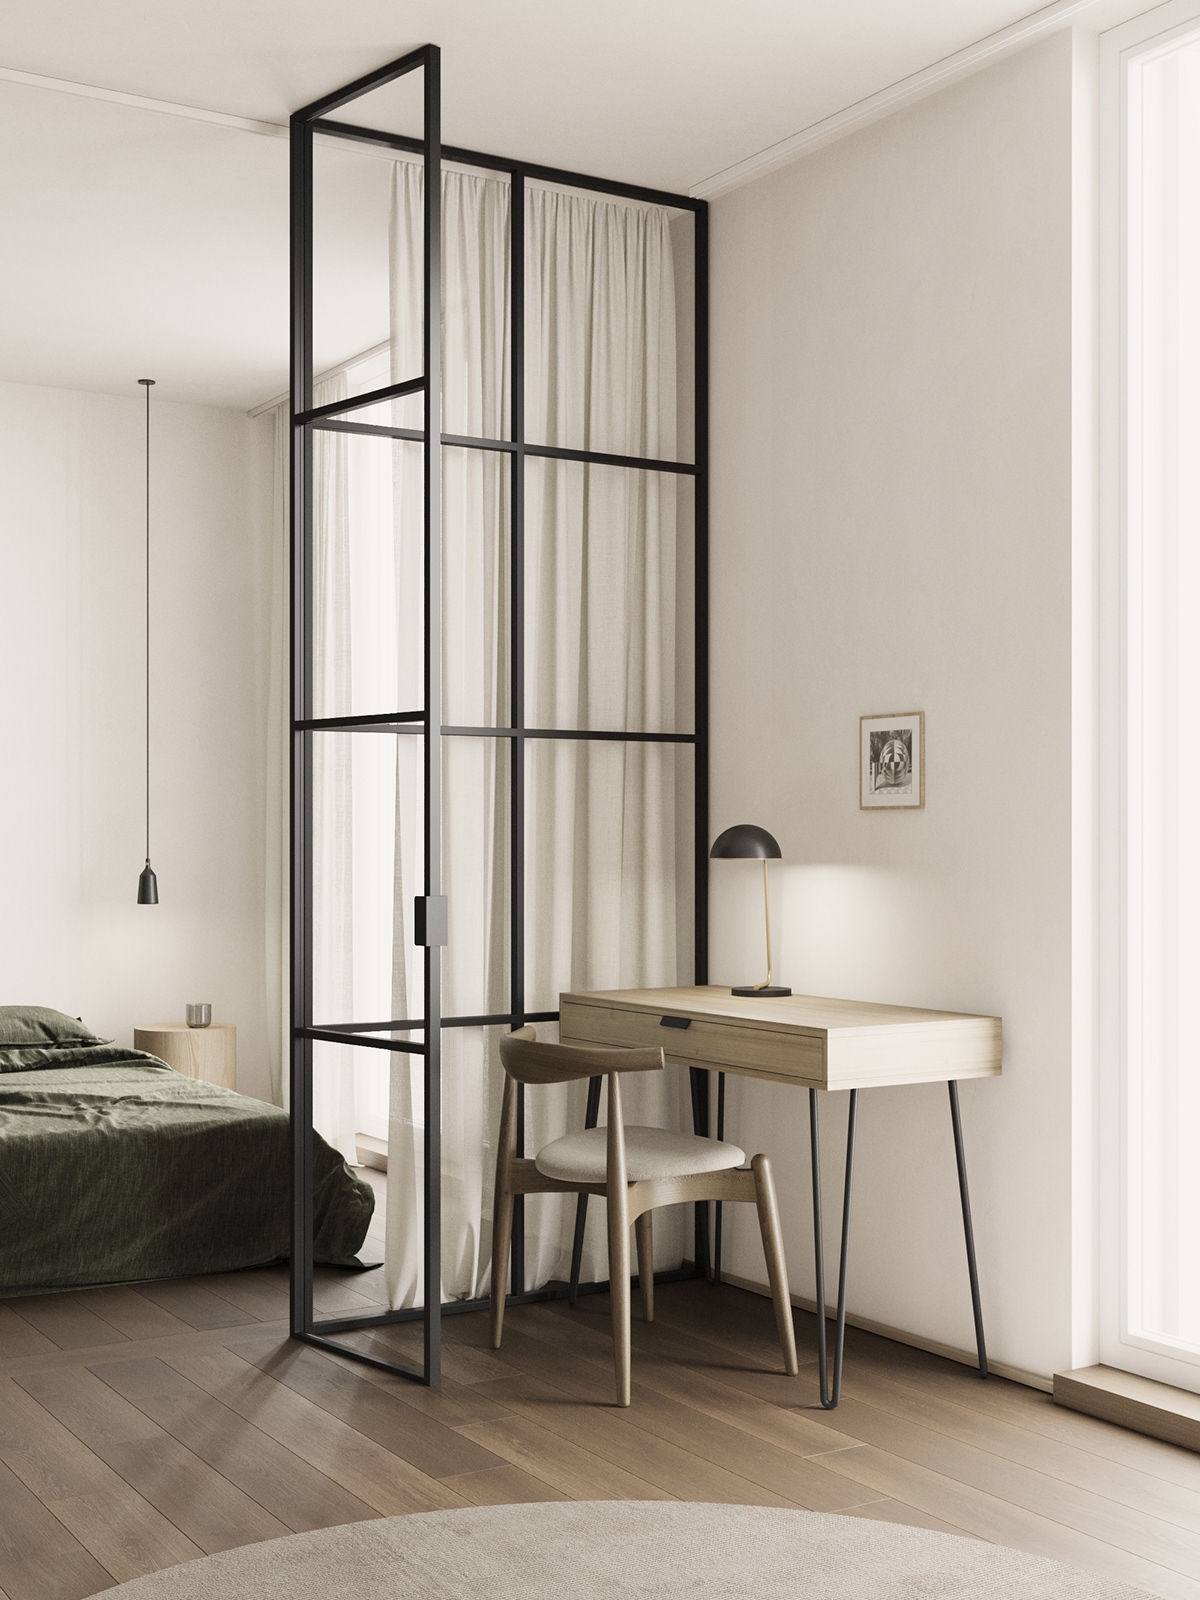 Nhìn ngắm căn hộ nhỏ 47m2 thiết kế theo phong cách tối giản 